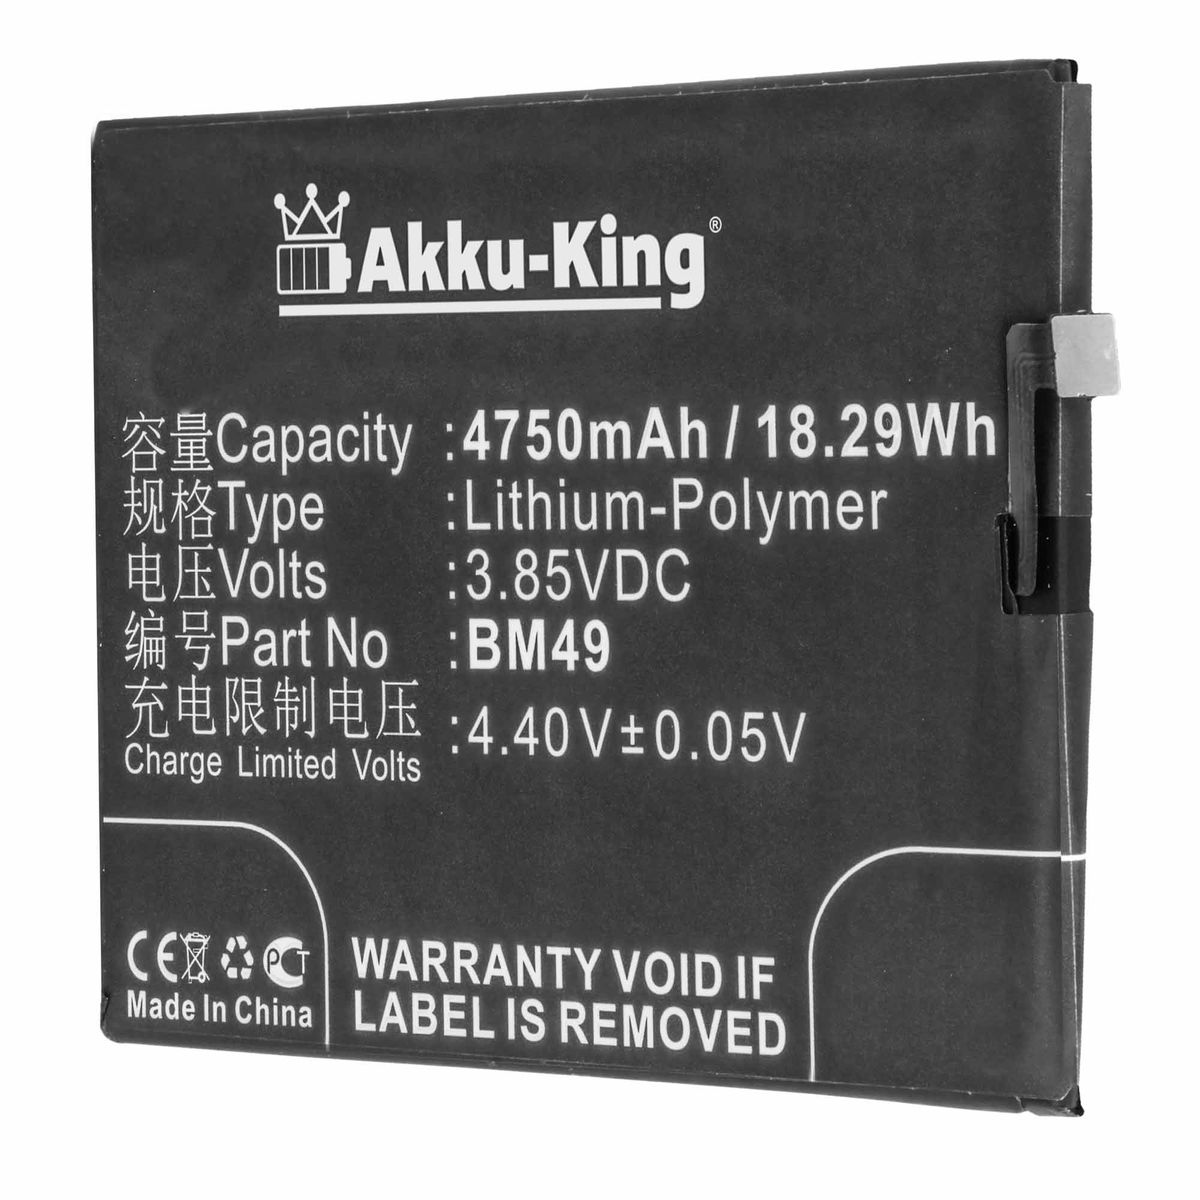 AKKU-KING Akku kompatibel mit Xiaomi 4750mAh Li-Polymer 7.2 BM49 Handy-Akku, Volt